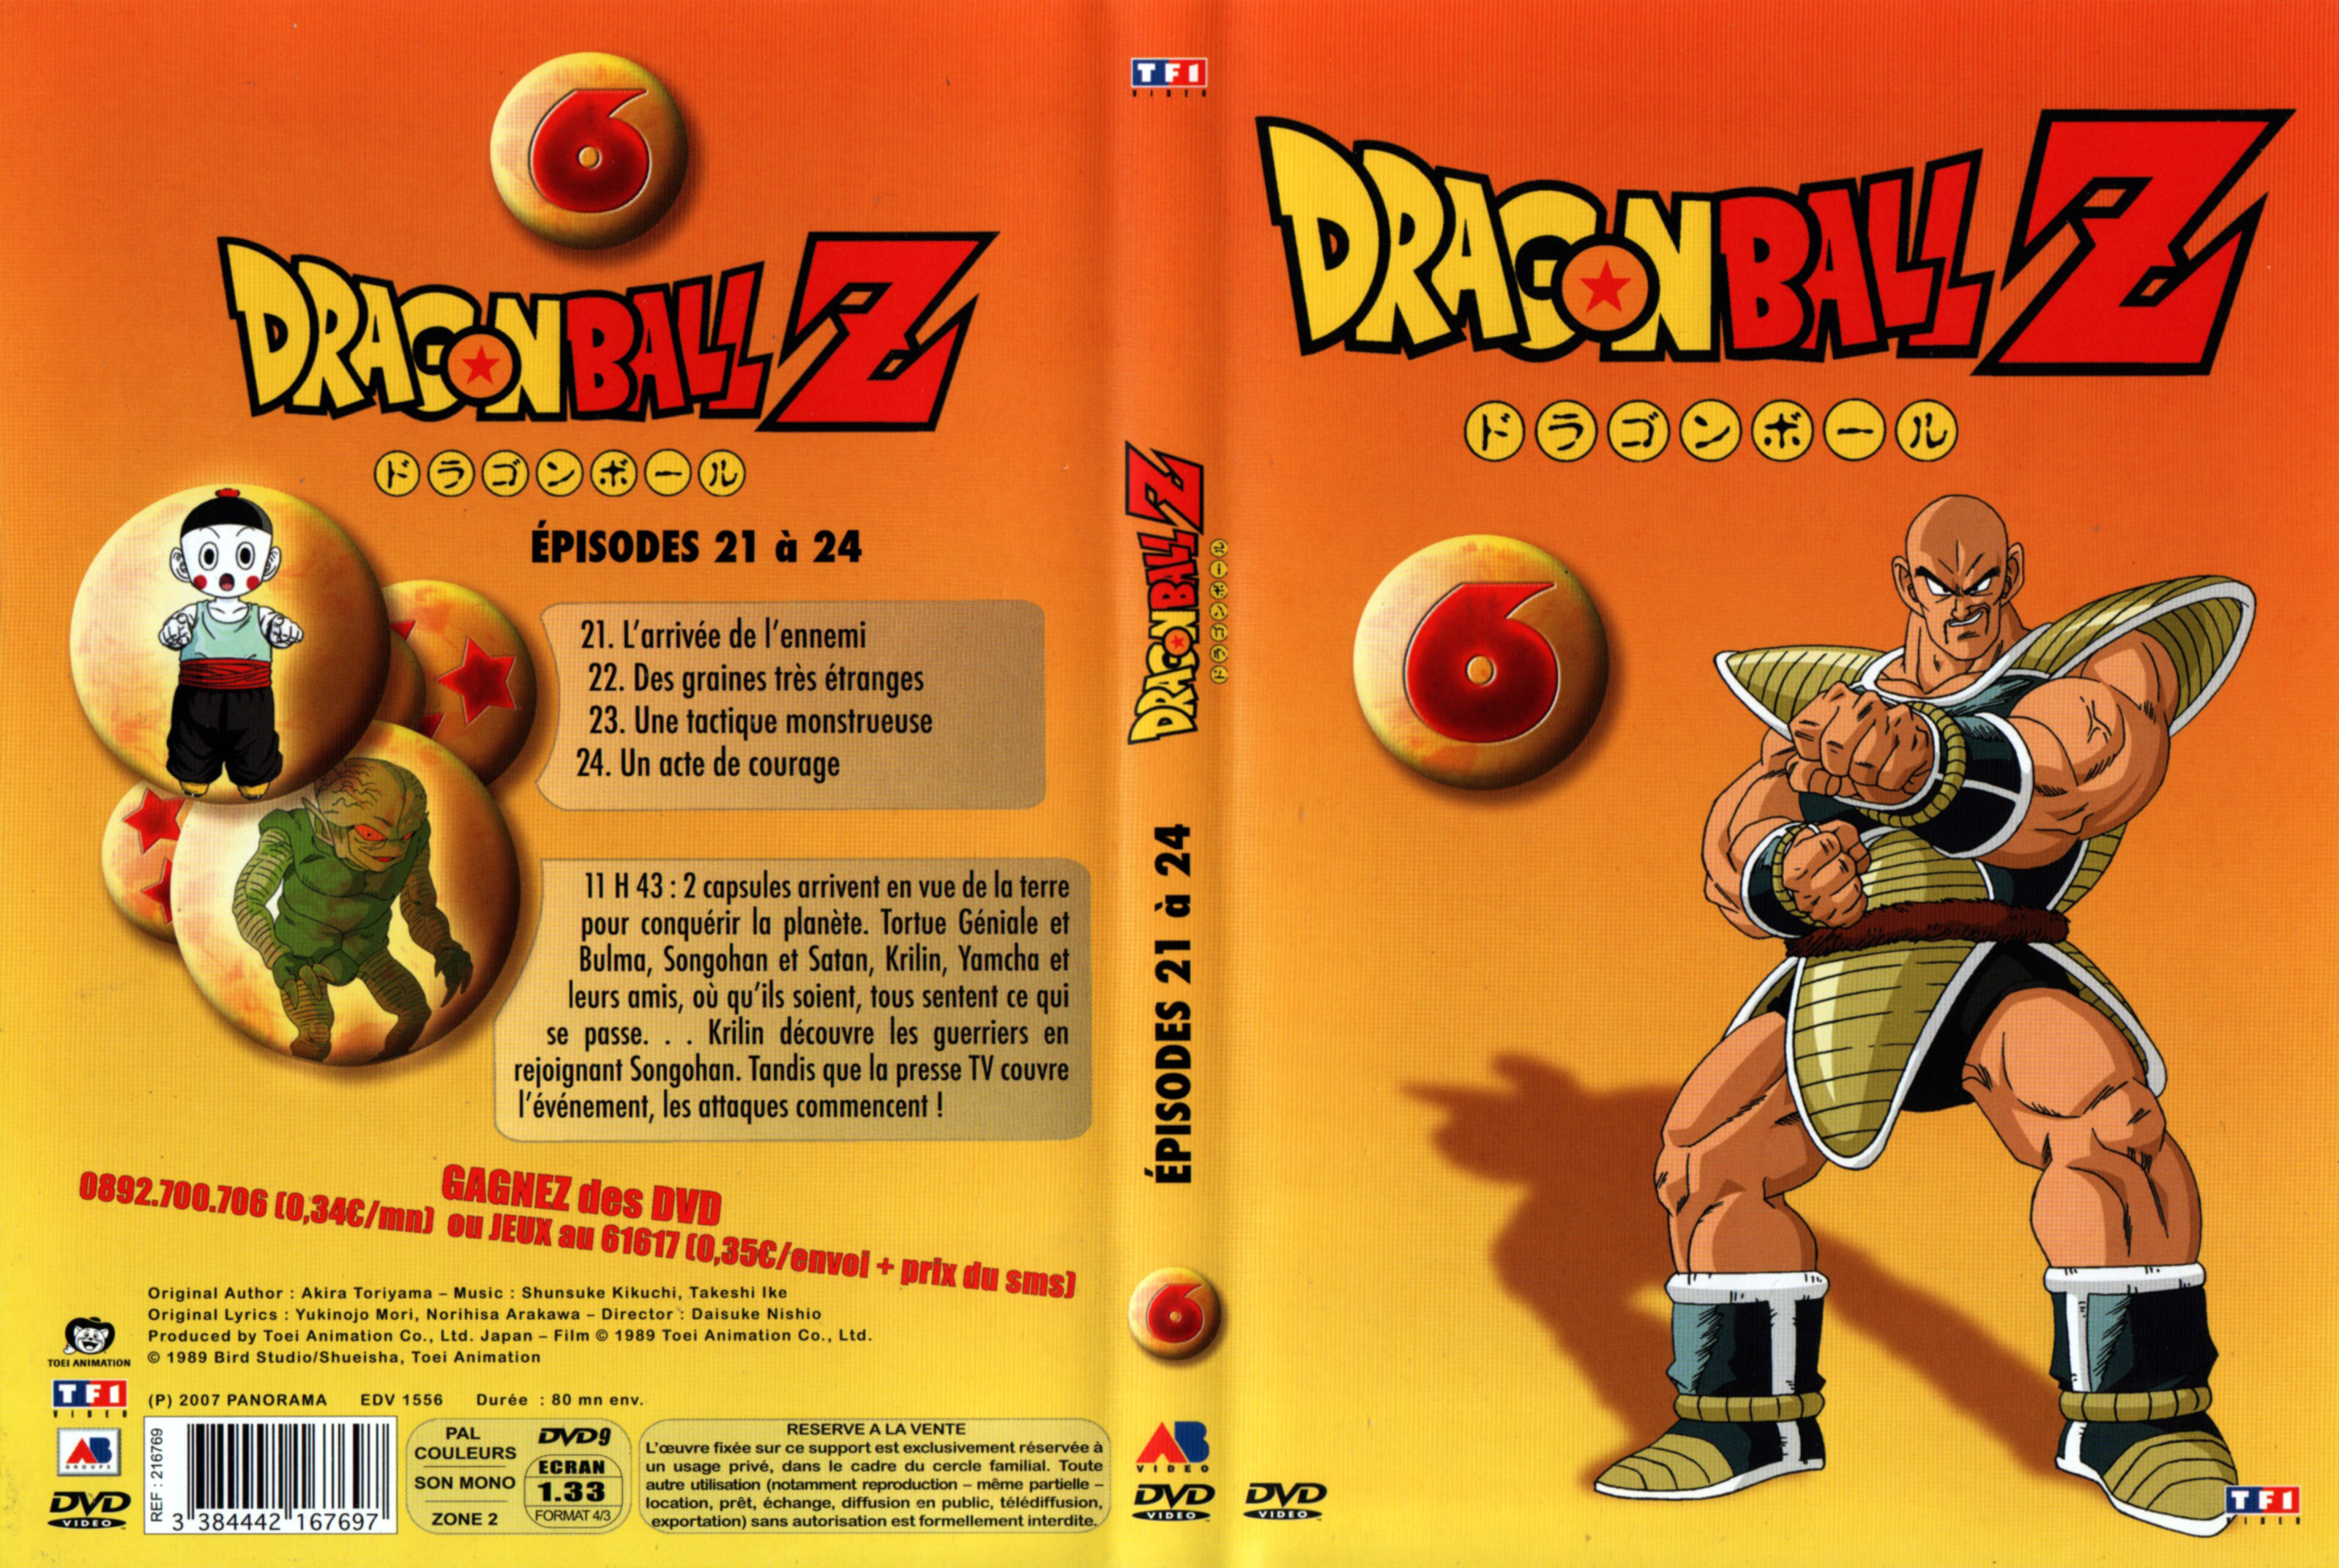 Jaquette DVD Dragon Ball Z vol 06 v2